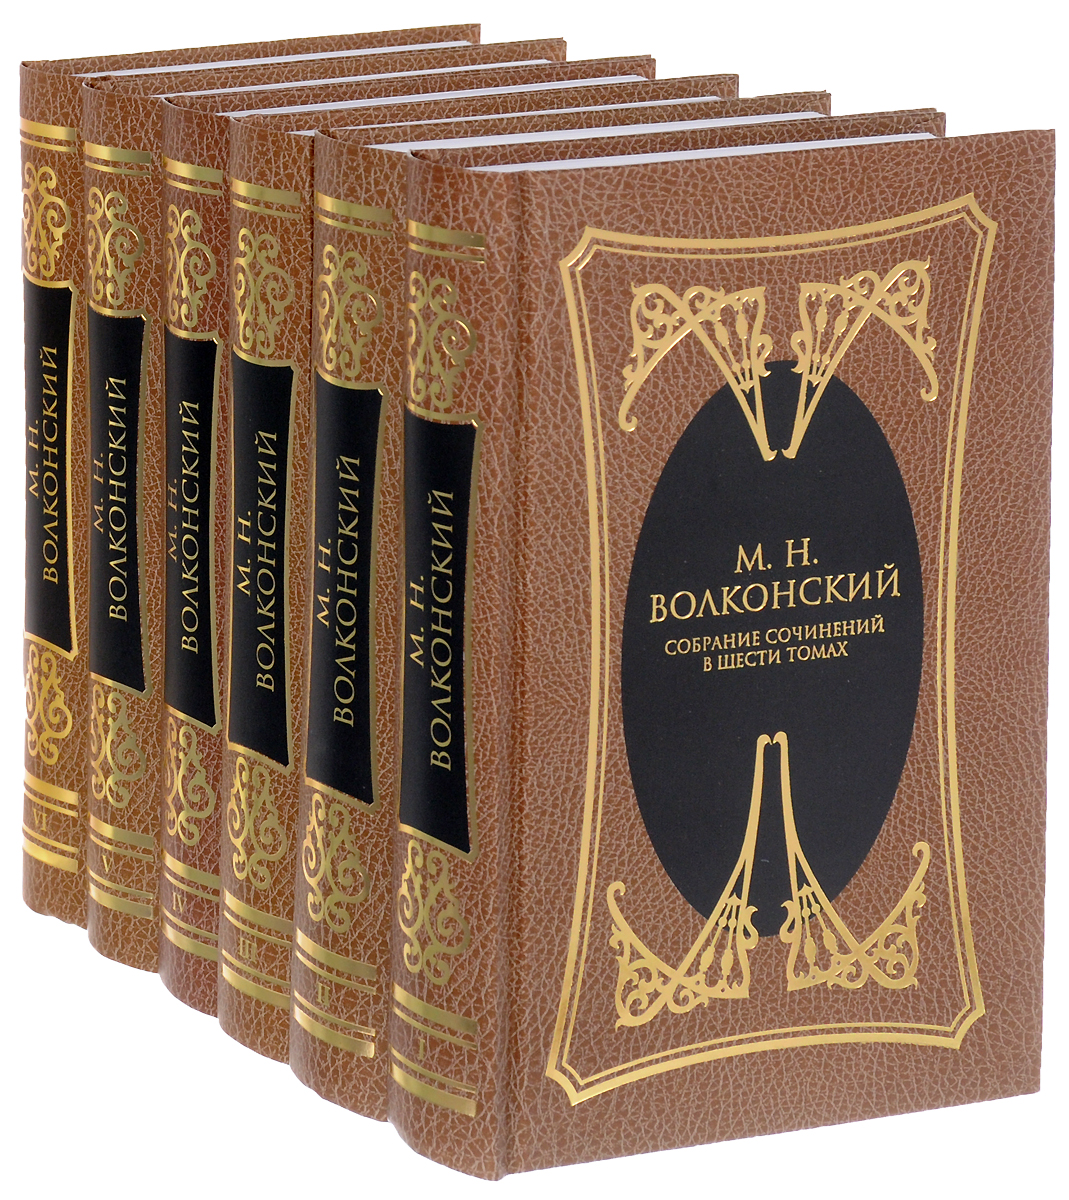 М. Н. Волконский. Собрание сочинений в 6 томах (комплект из 6 книг). М. Н. Волконский